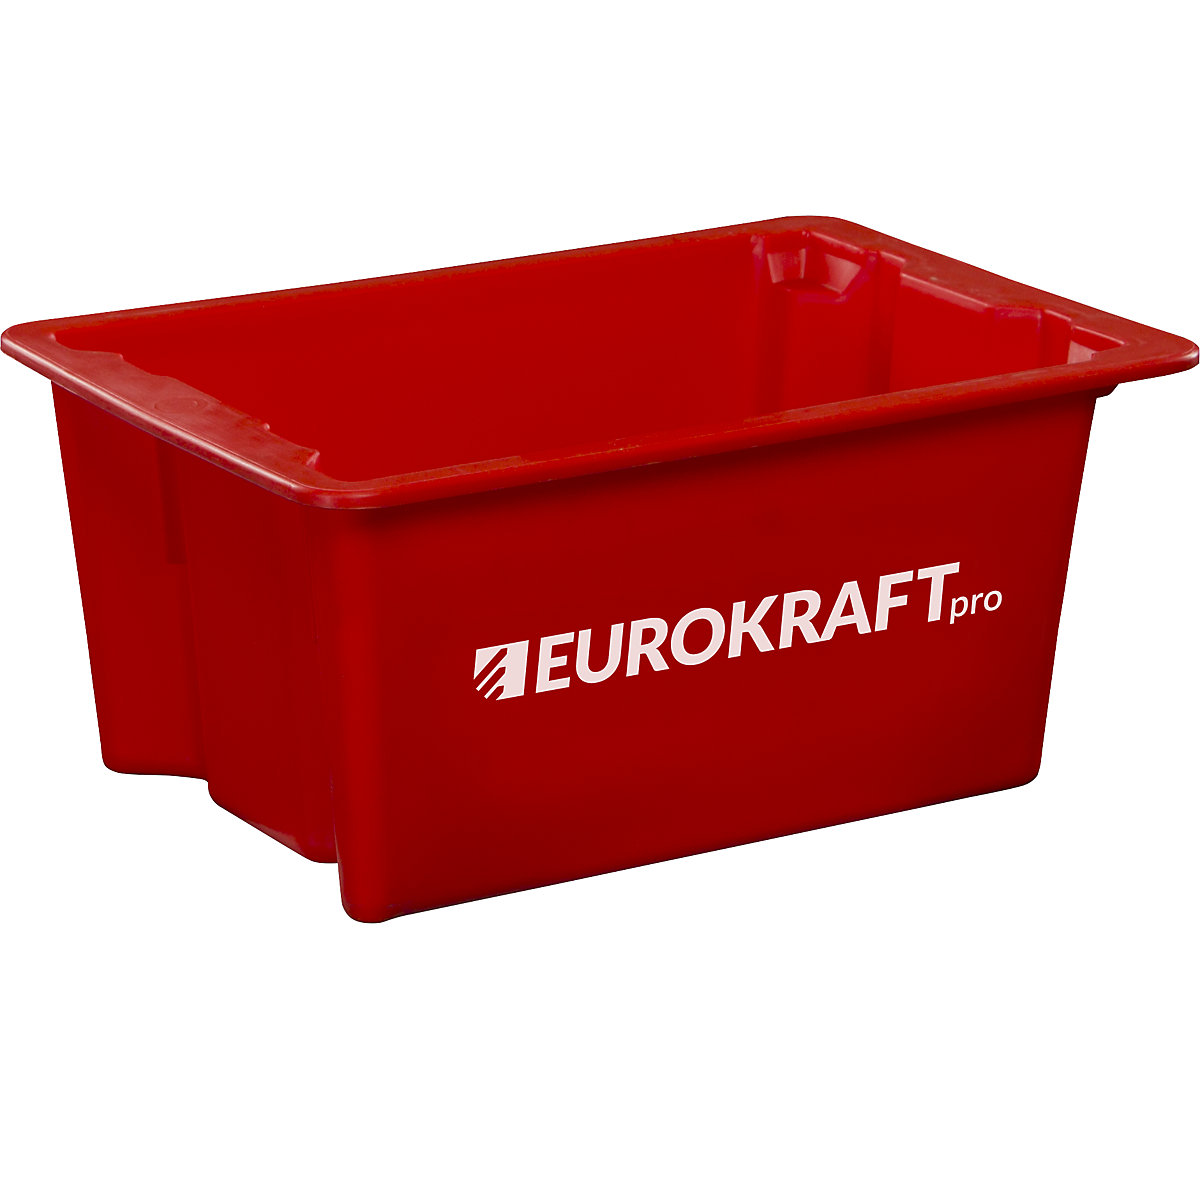 EUROKRAFTpro Drehstapelbehälter aus lebensmittelechtem Polypropylen, Inhalt 6 Liter, VE 4 Stk, Wände und Boden geschlossen, rot